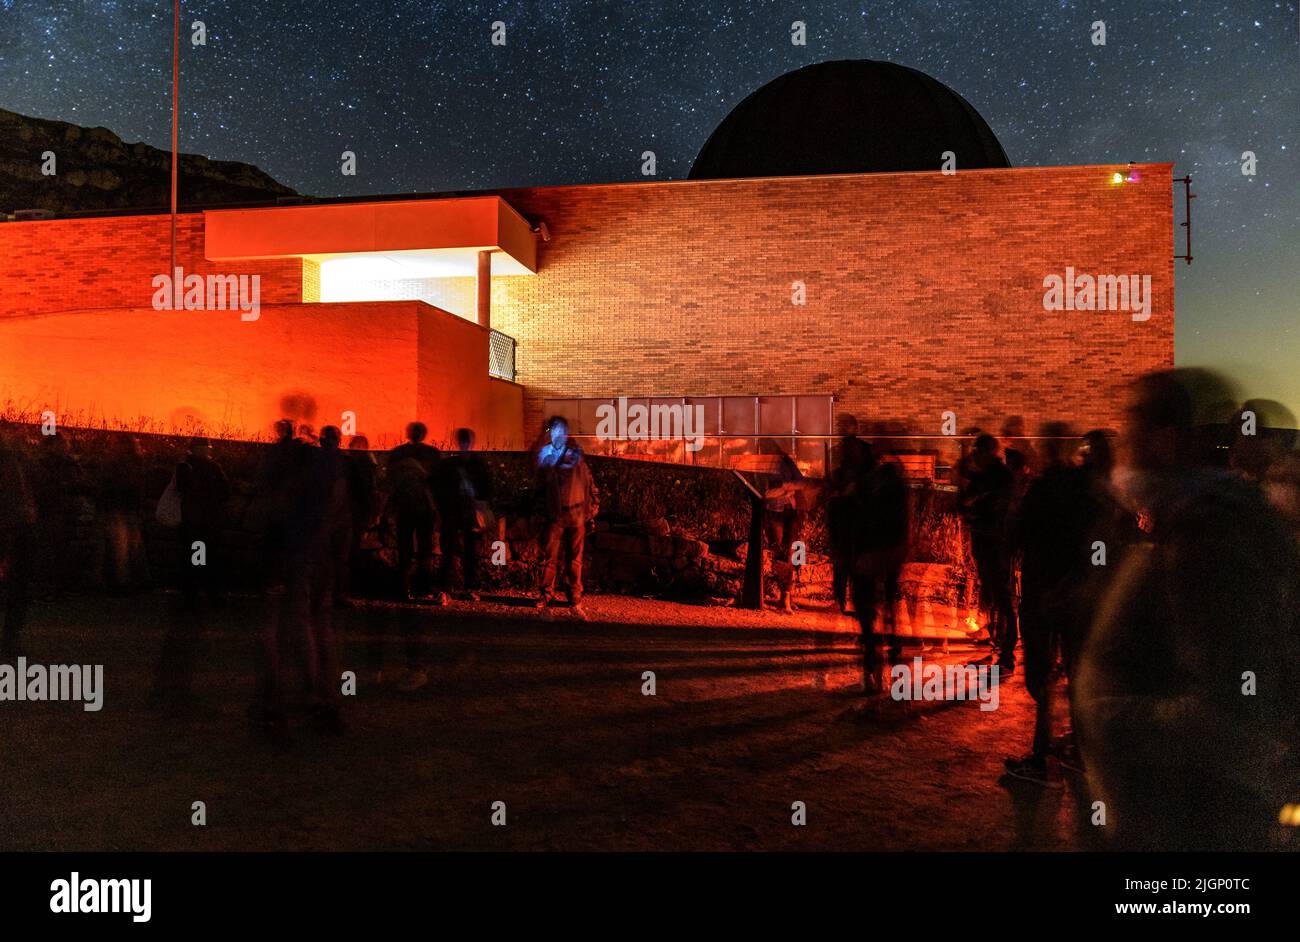 Montsec Osservatorio Astronomico di notte durante un'osservazione astronomica (Àger, Lleida, Catalogna, Spagna) ESP: Observatorio Astronómico Montsec Foto Stock